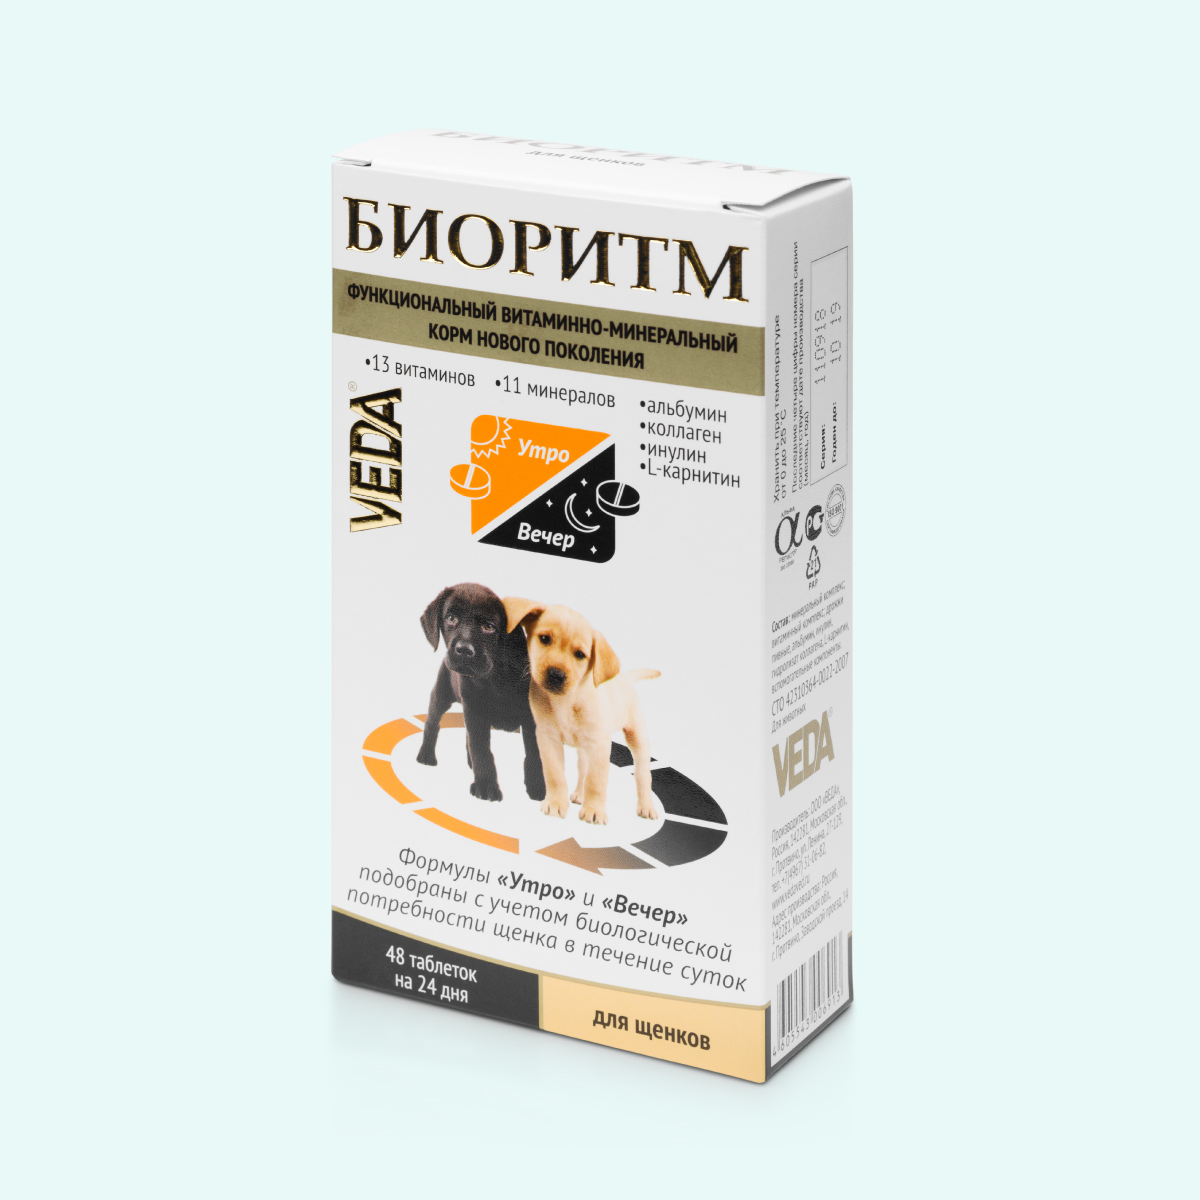 Витаминно-минеральный комплекс для щенков БИОРИТМ